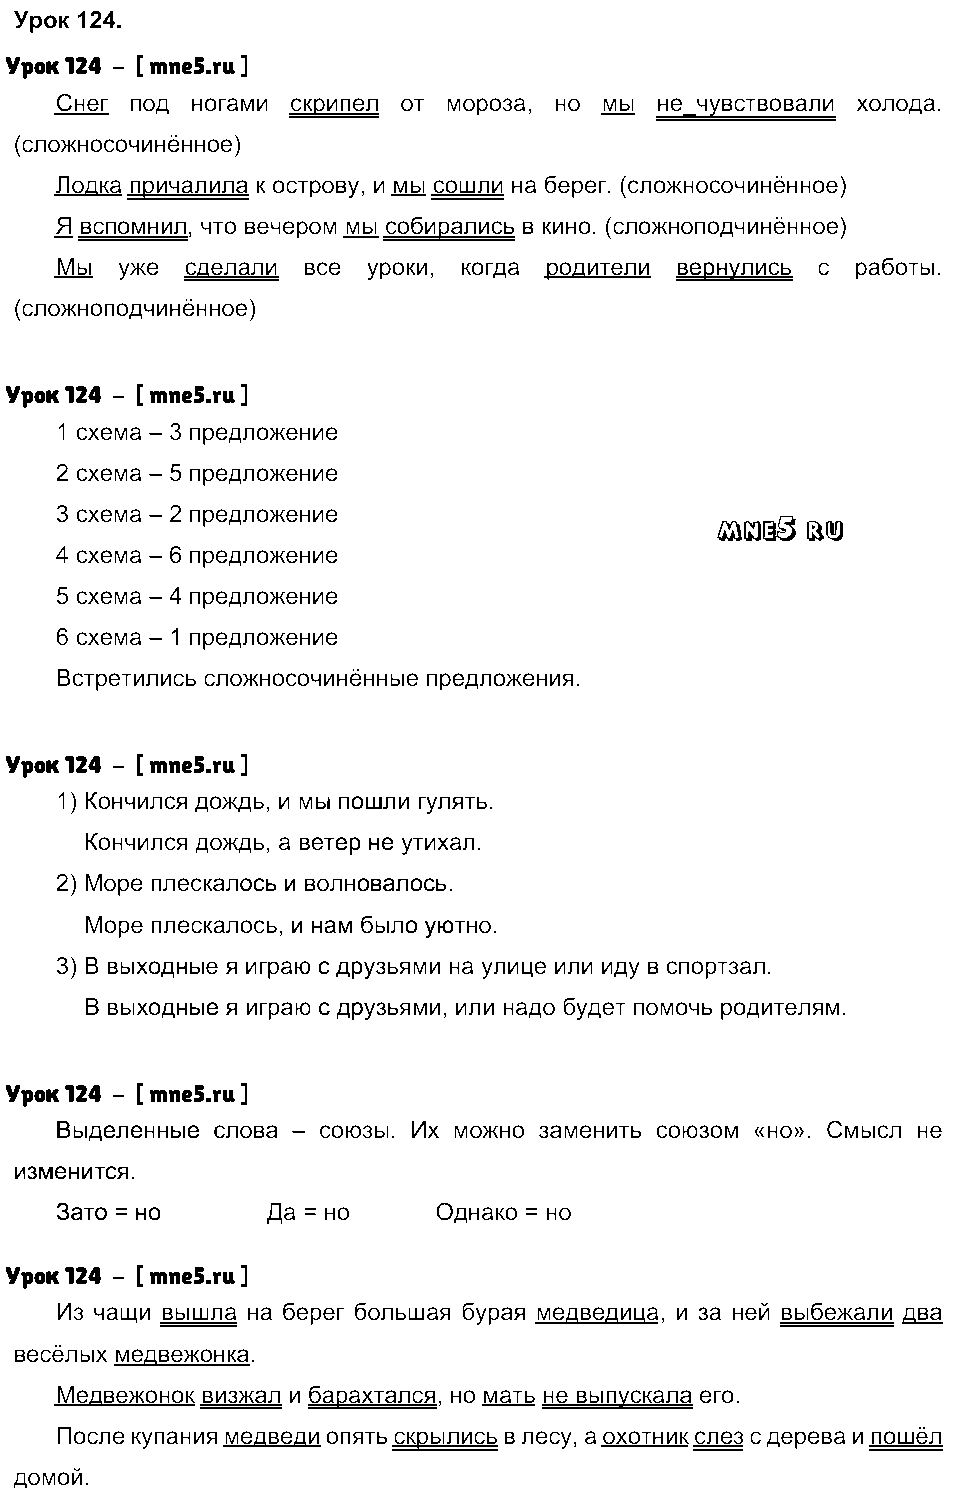 ГДЗ Русский язык 4 класс - Урок 124